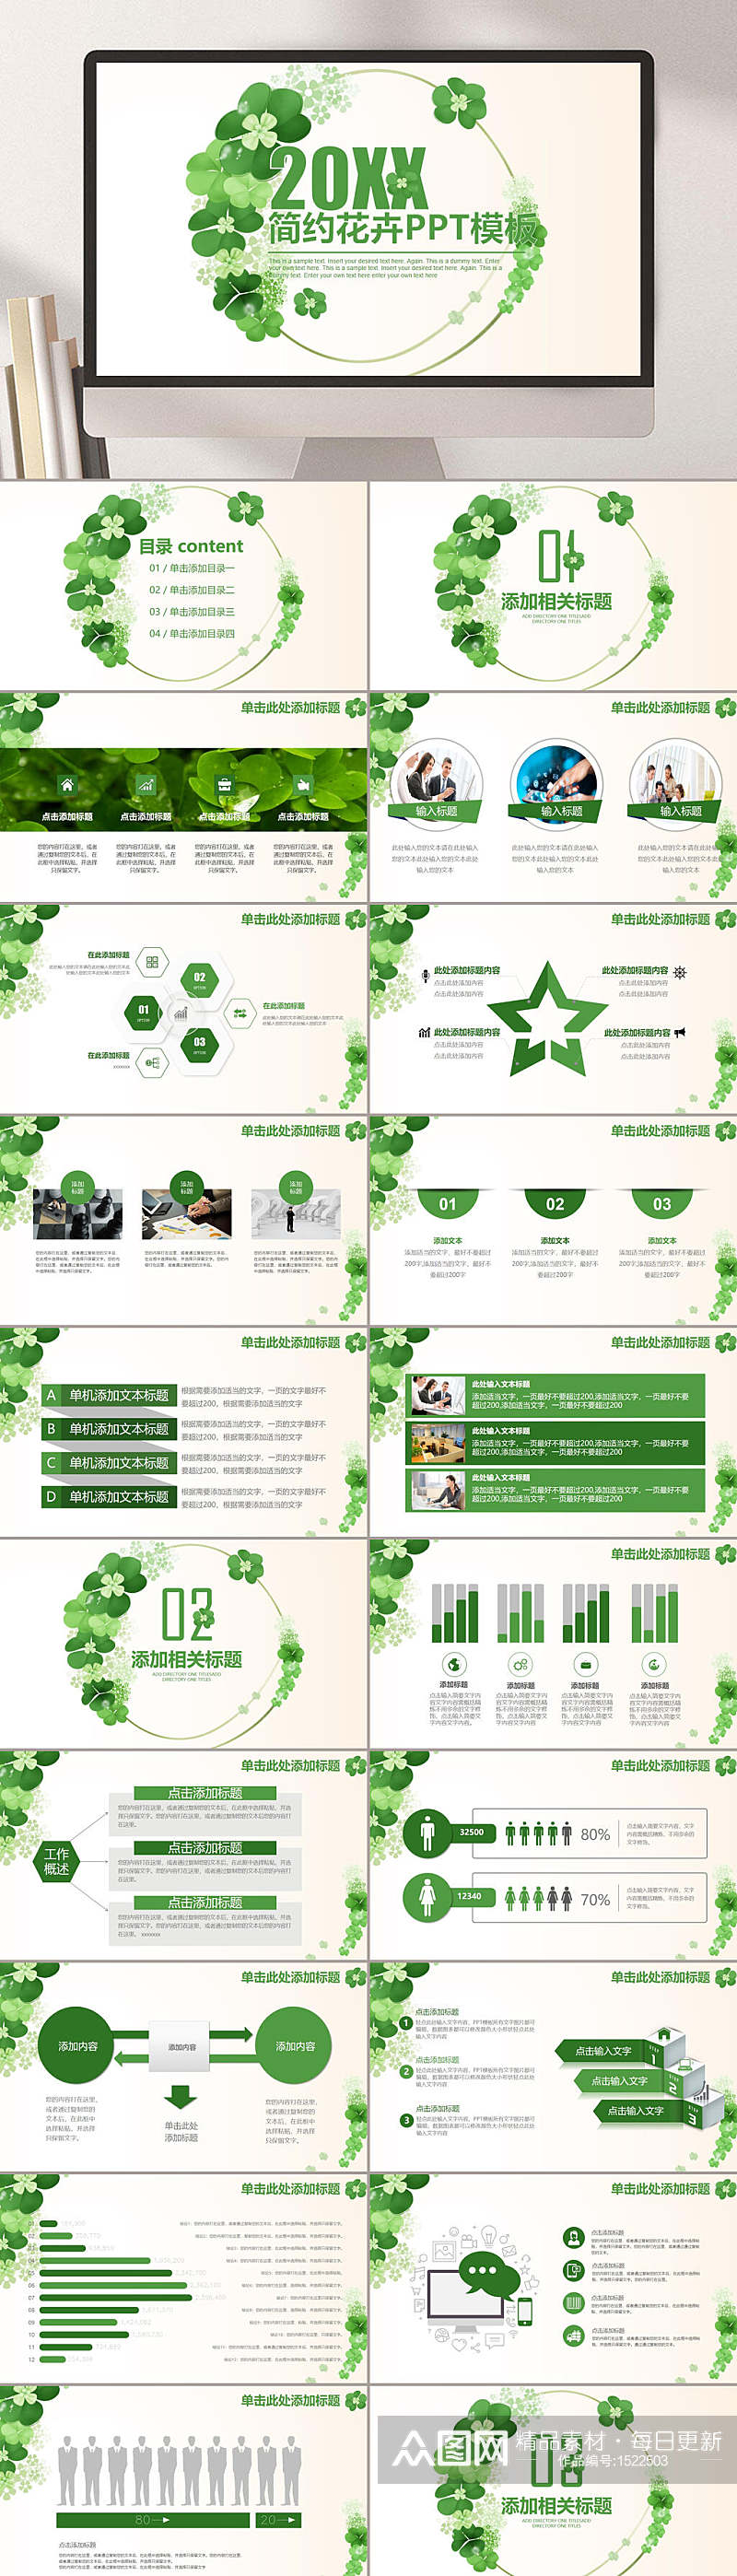 工作总结暨新年计划绿色花卉PPT模板素材